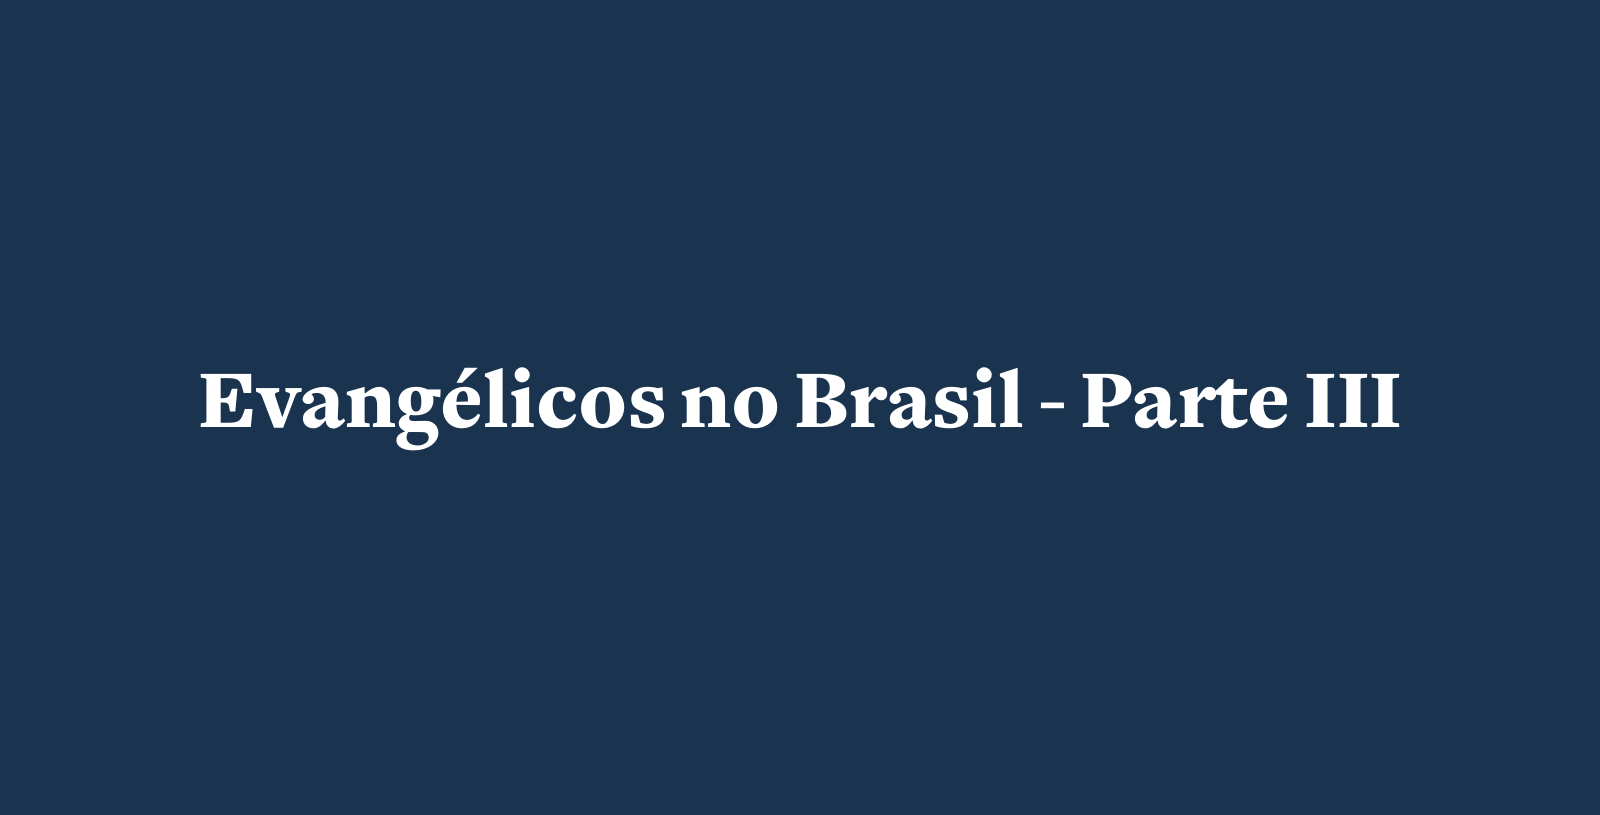 Um Brasil evangélico pode ser menos conservador', diz pesquisador